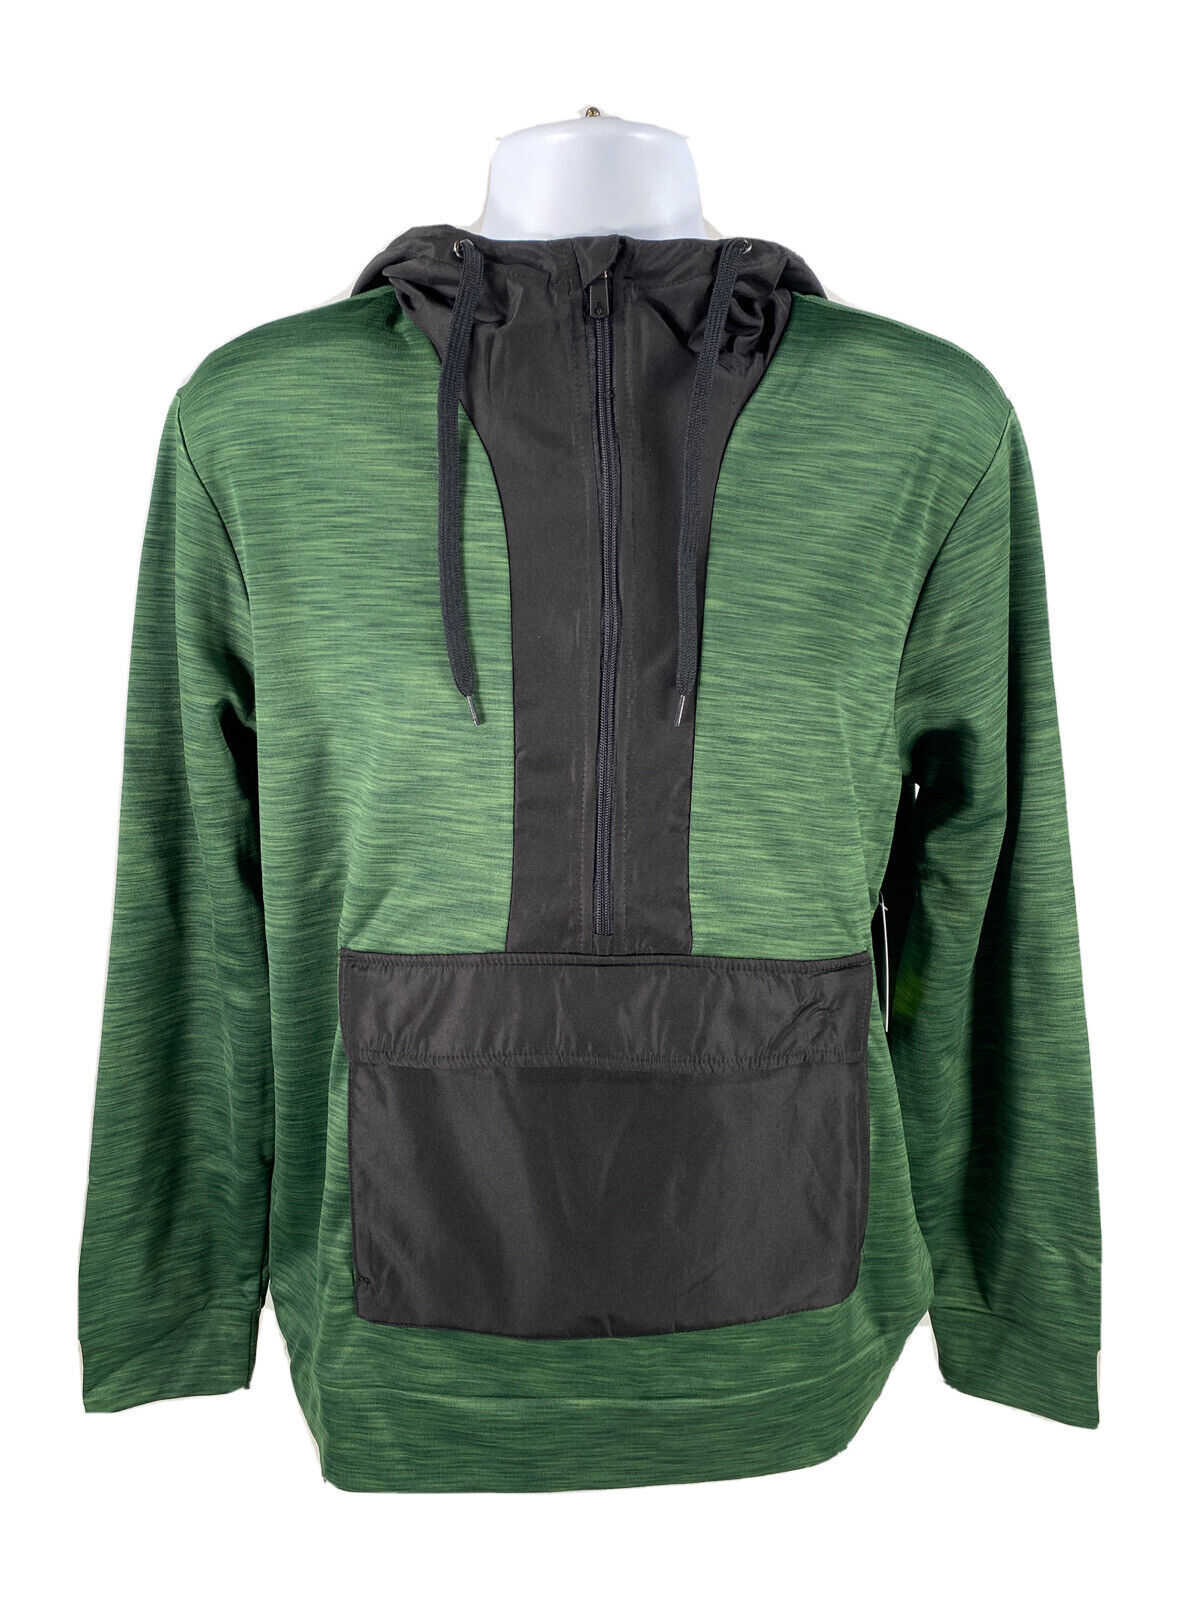 NEW Tek Gear Men's Black/Green Fleece Lined Pullover Sweatshirt Sz M